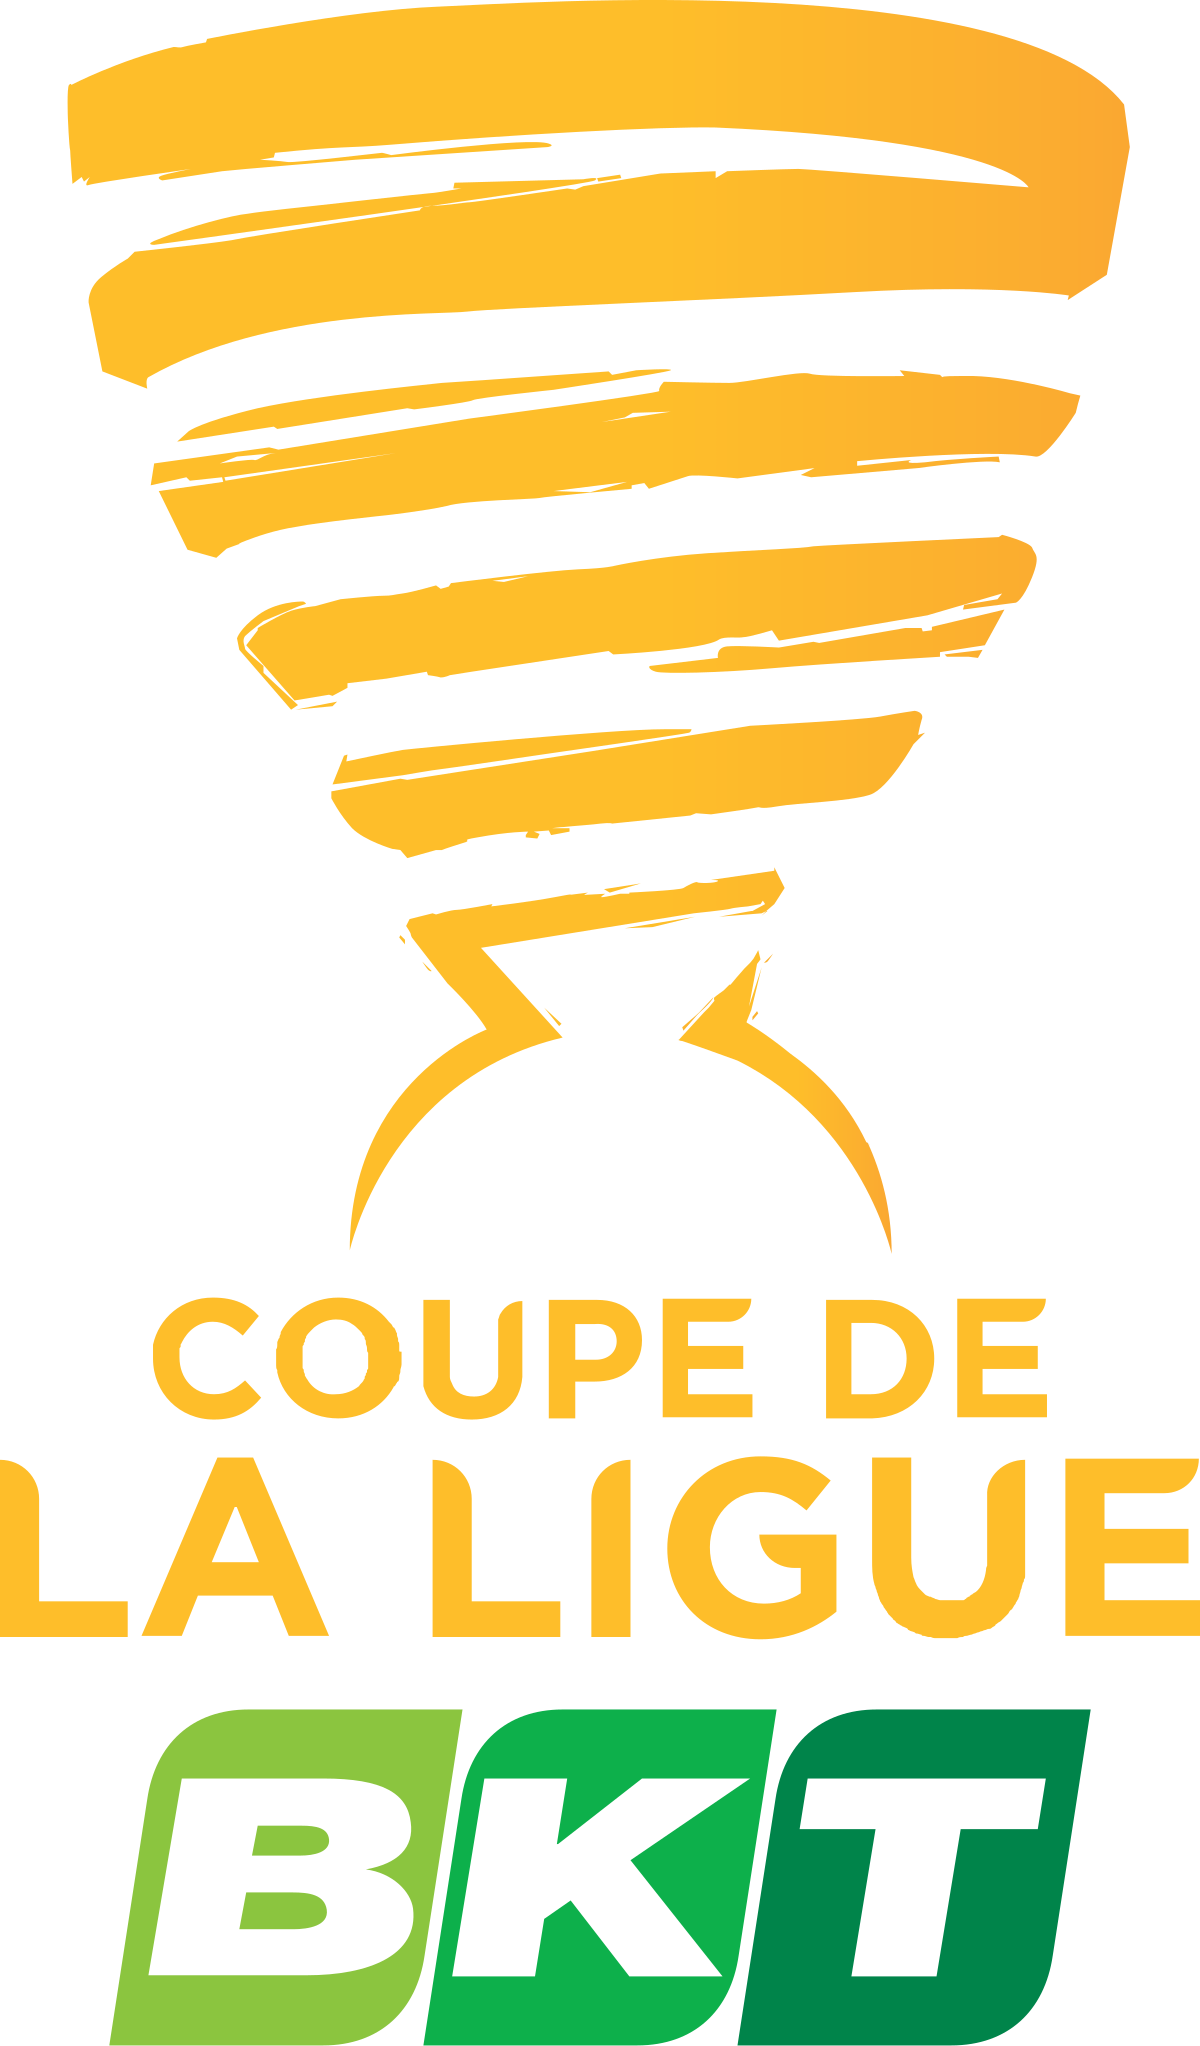 Ligue 1 / Coupe de France / Coupe de la Ligue 1200px-Logo_Coupe_de_la_Ligue_BKT_2018.svg